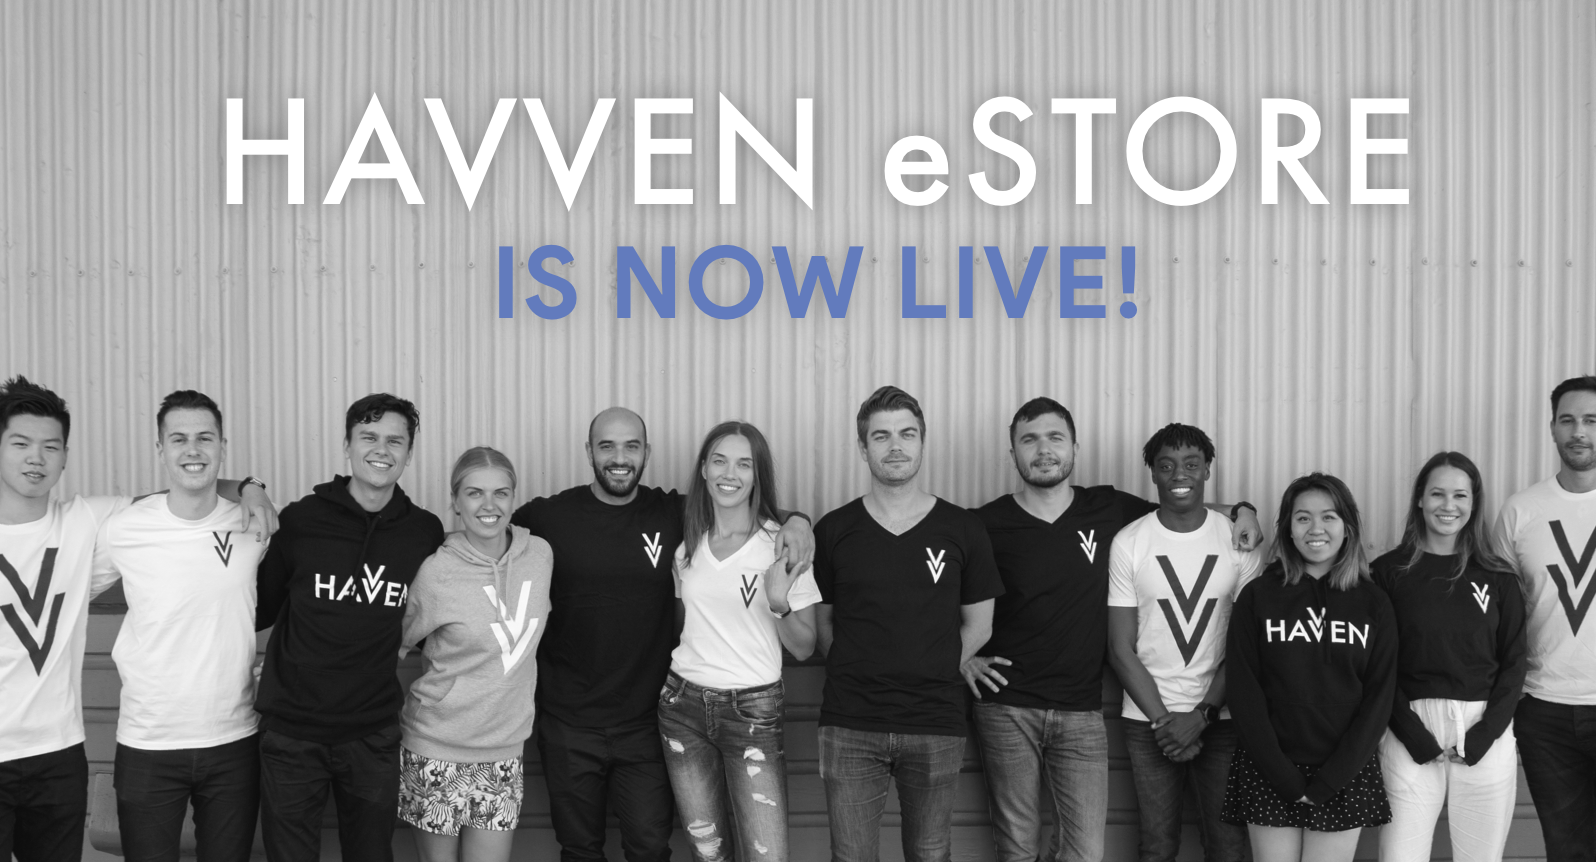 The Havven eStore is now live!